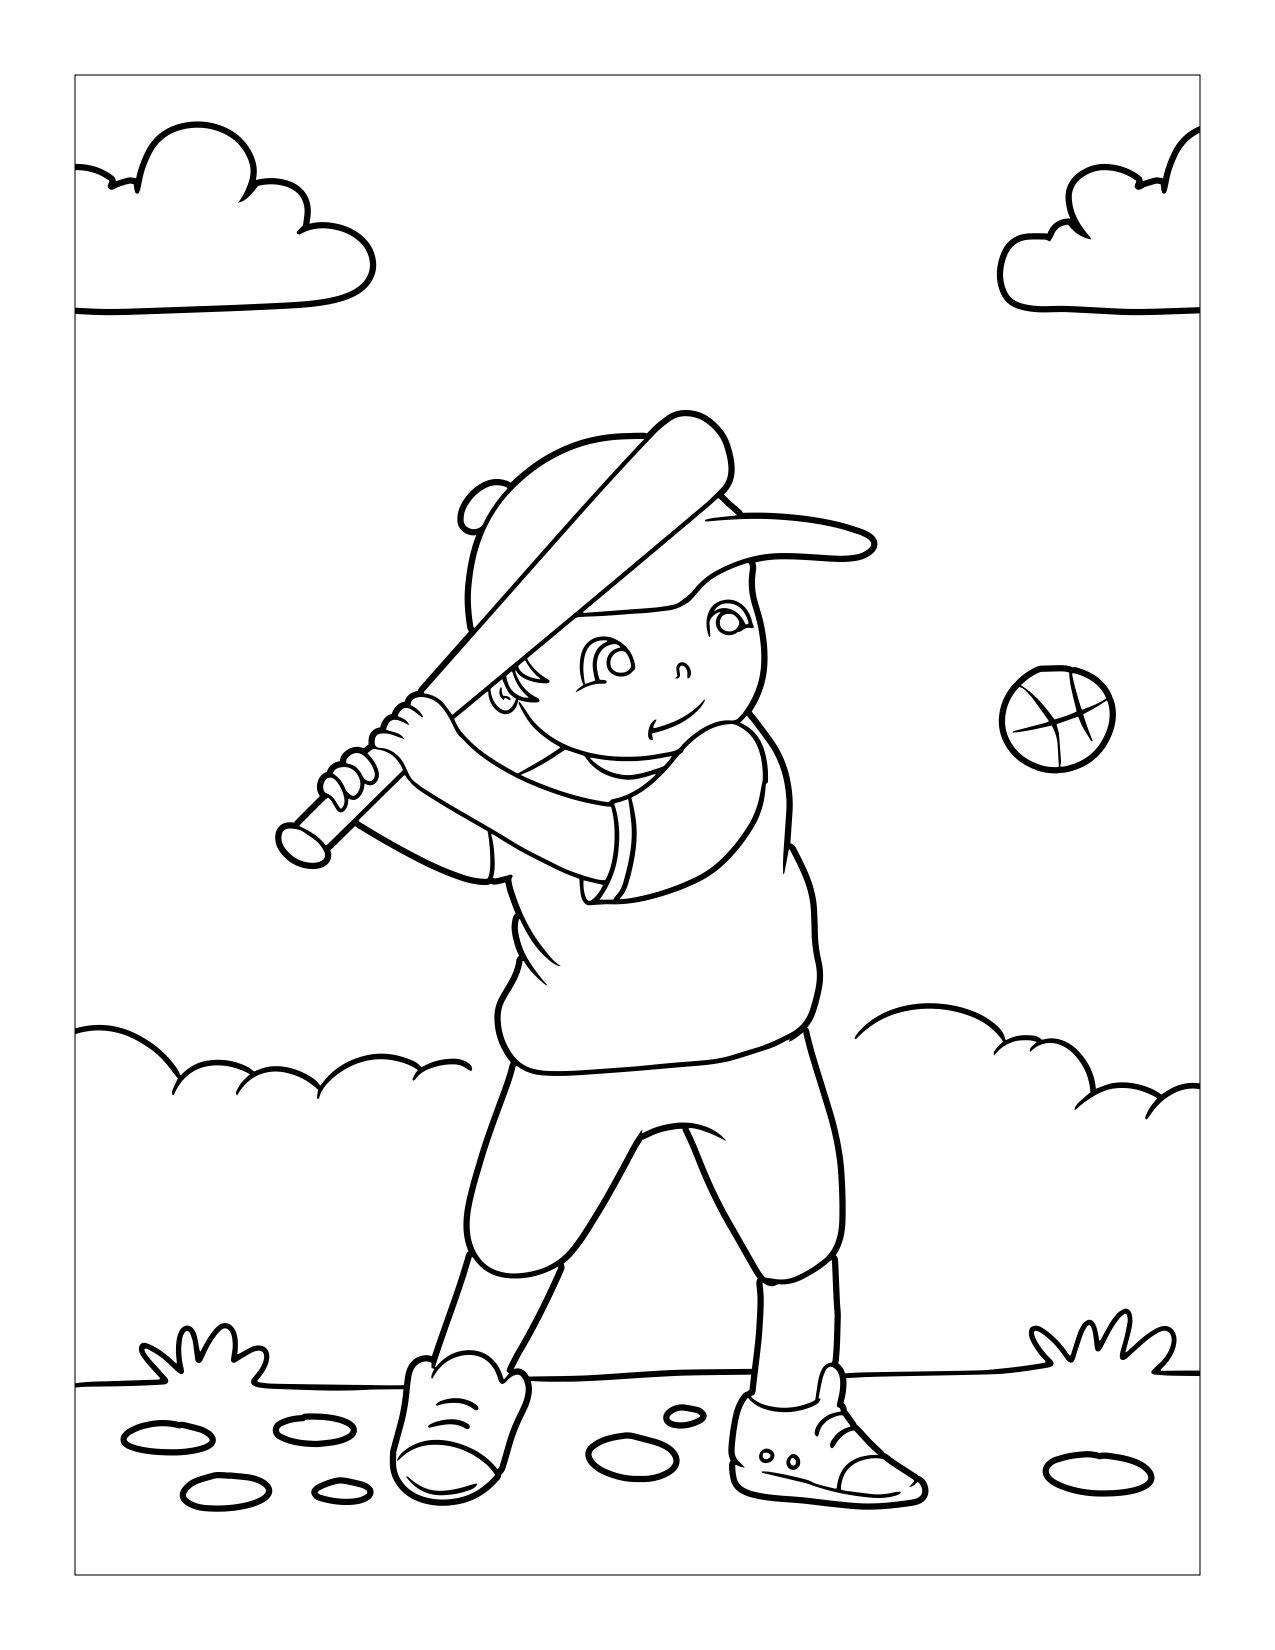 Disegno da colorare di bambino che gioca a baseball